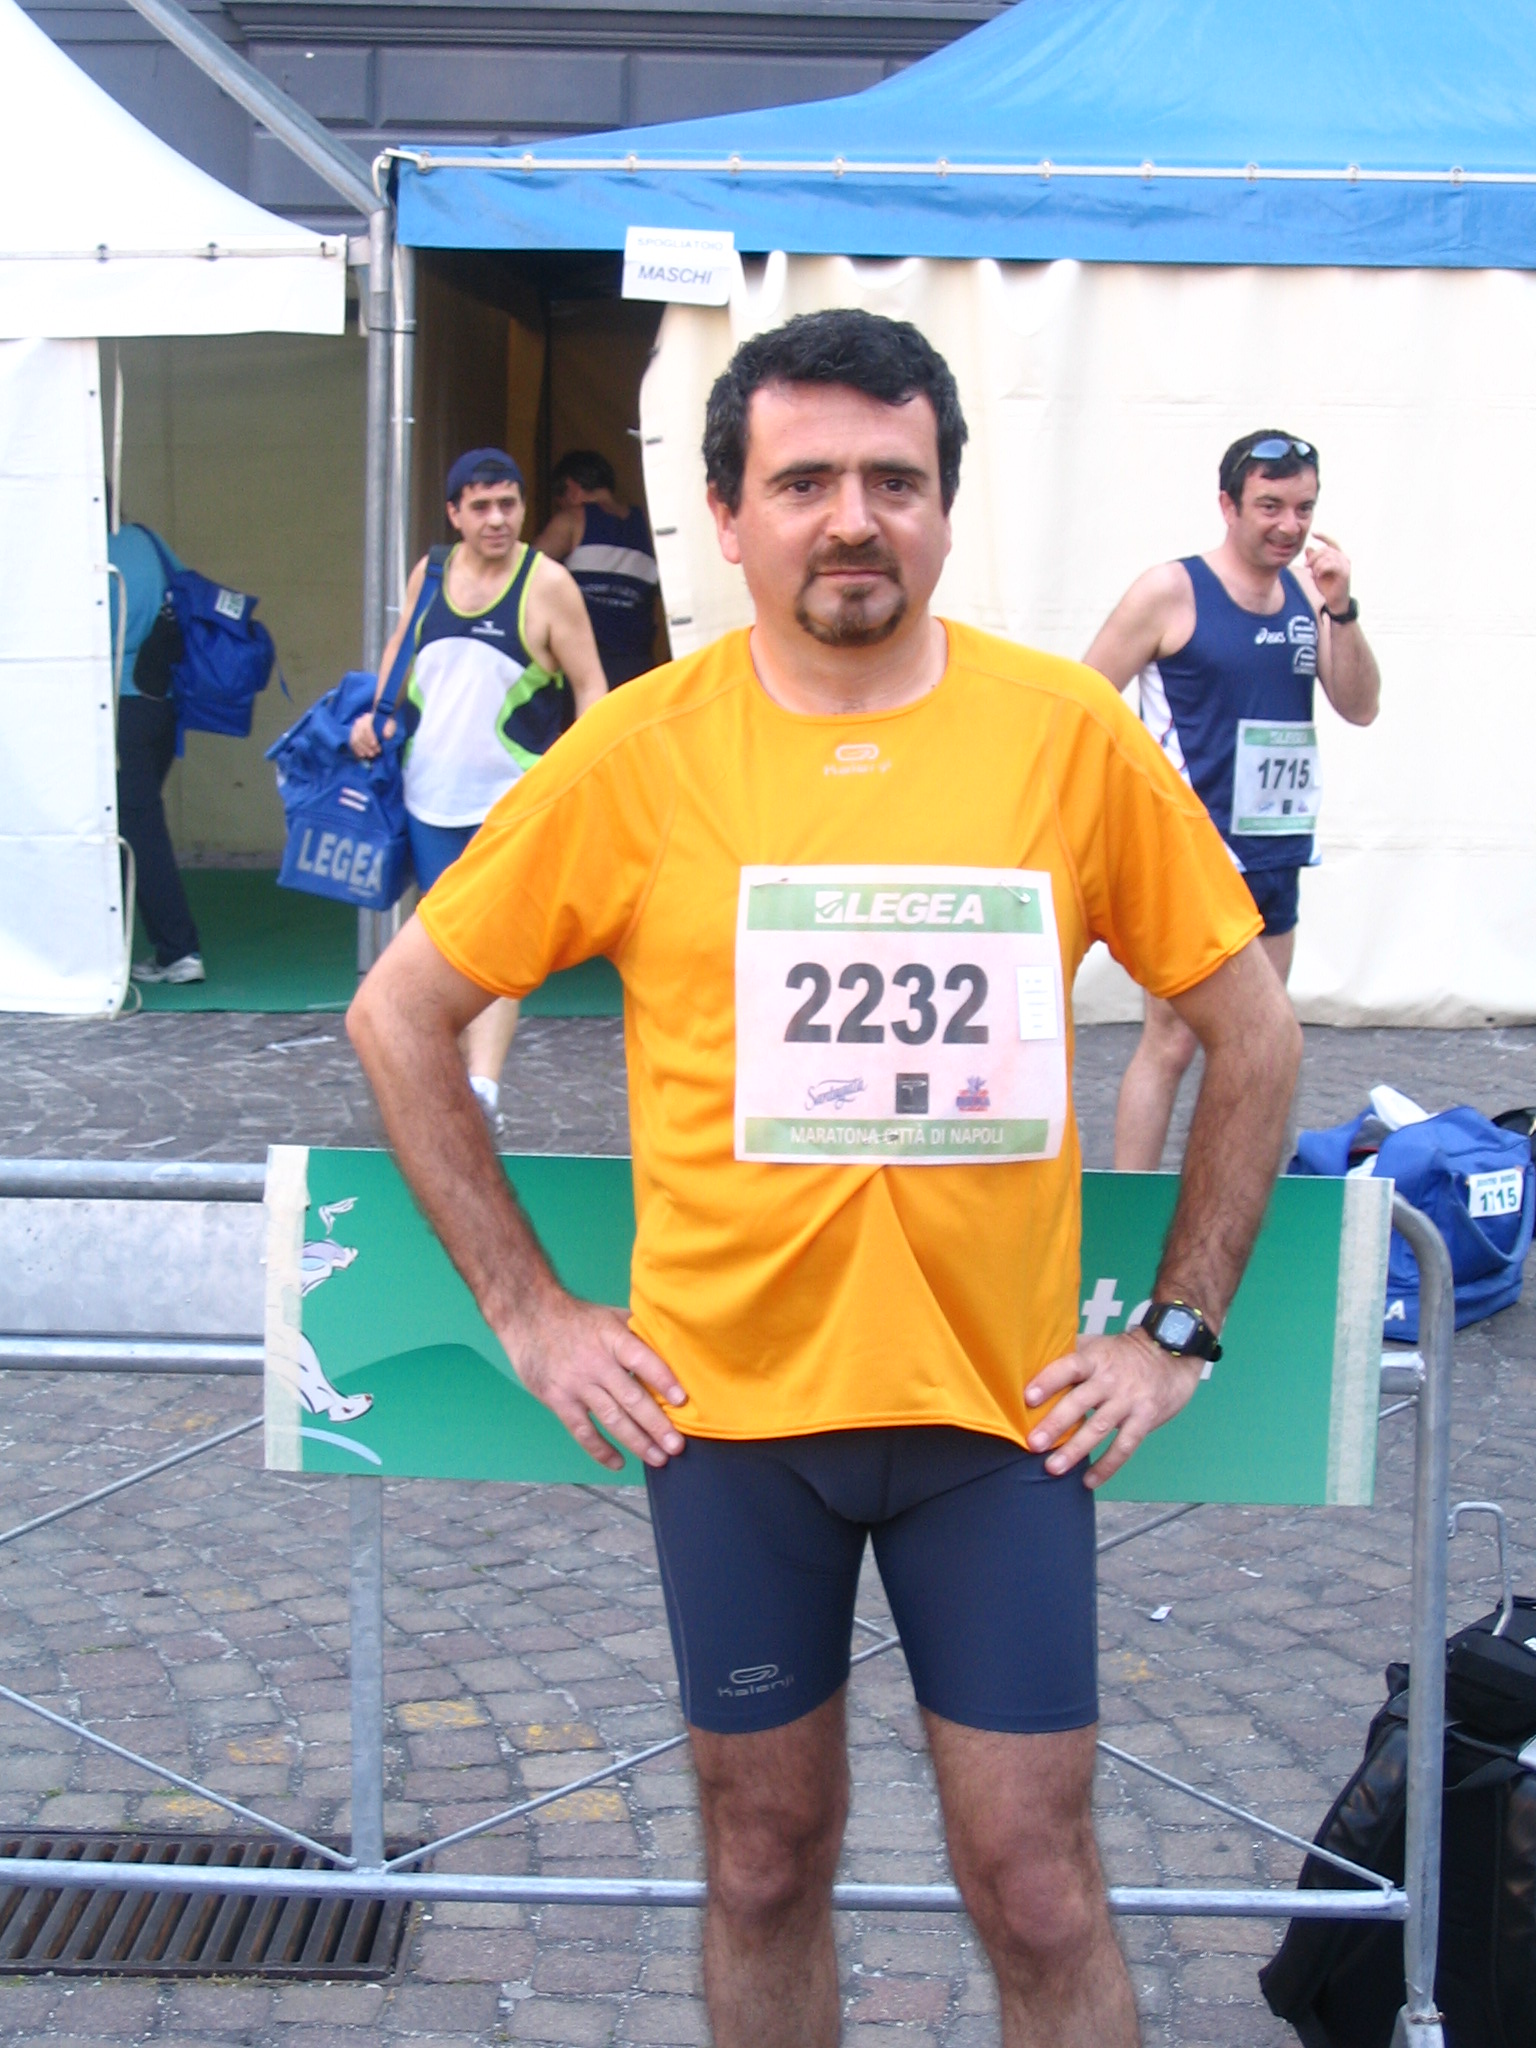 La mia prima gara la corsi il 22 aprile del 2007. Fu la Mezza Maratona di Napoli che si svolgeva in contemporanea alla IX edizione della Maratona di Napoli. Ricordo l'emozione che provai quando, giunto al villaggio maratona in Piazza del Plebiscito, appuntai sulla maglia il pettorale 2232 che avevo ritirato il giorno prima.